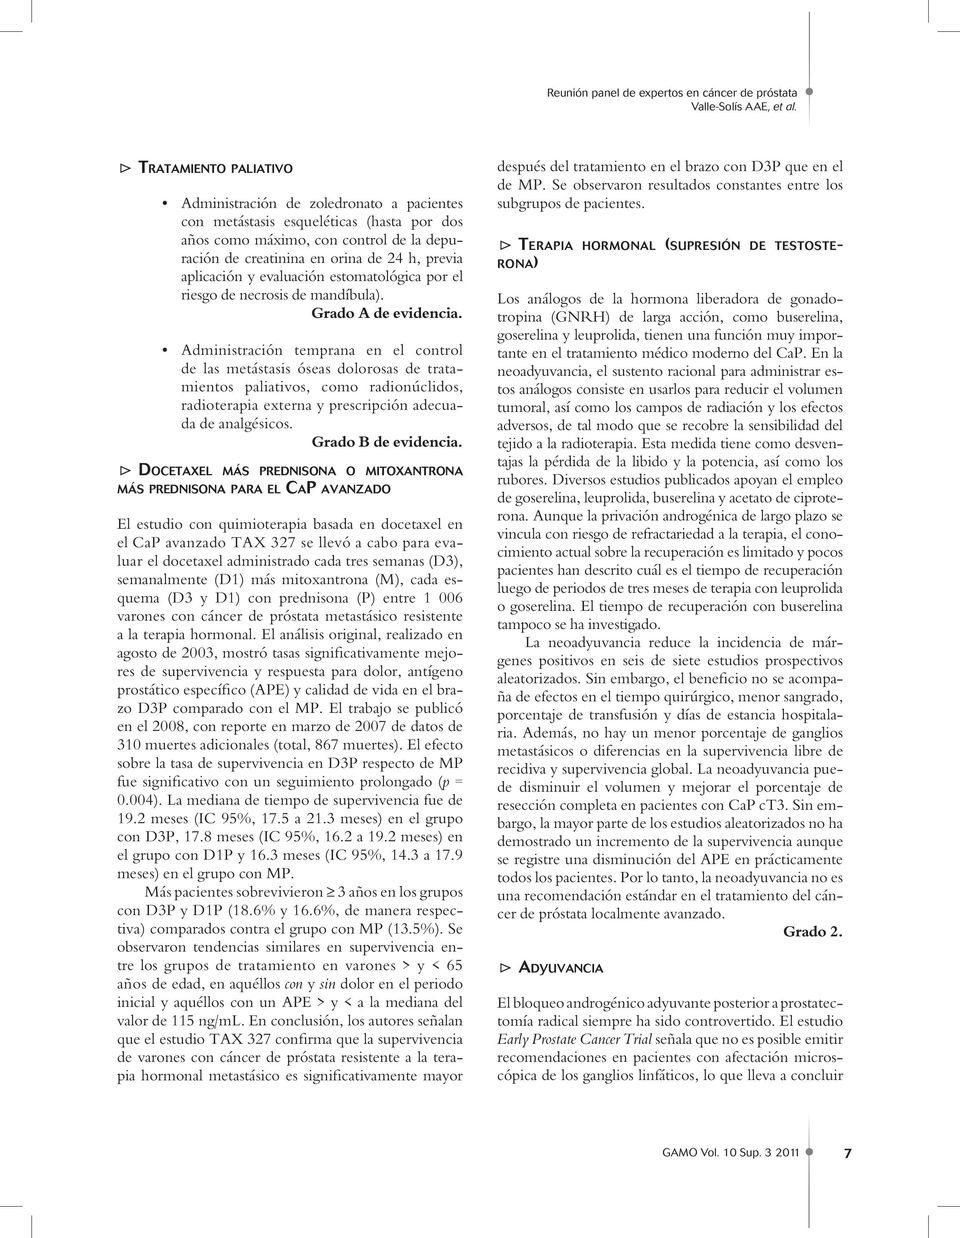 aplicación y evaluación estomatológica por el riesgo de necrosis de mandíbula).